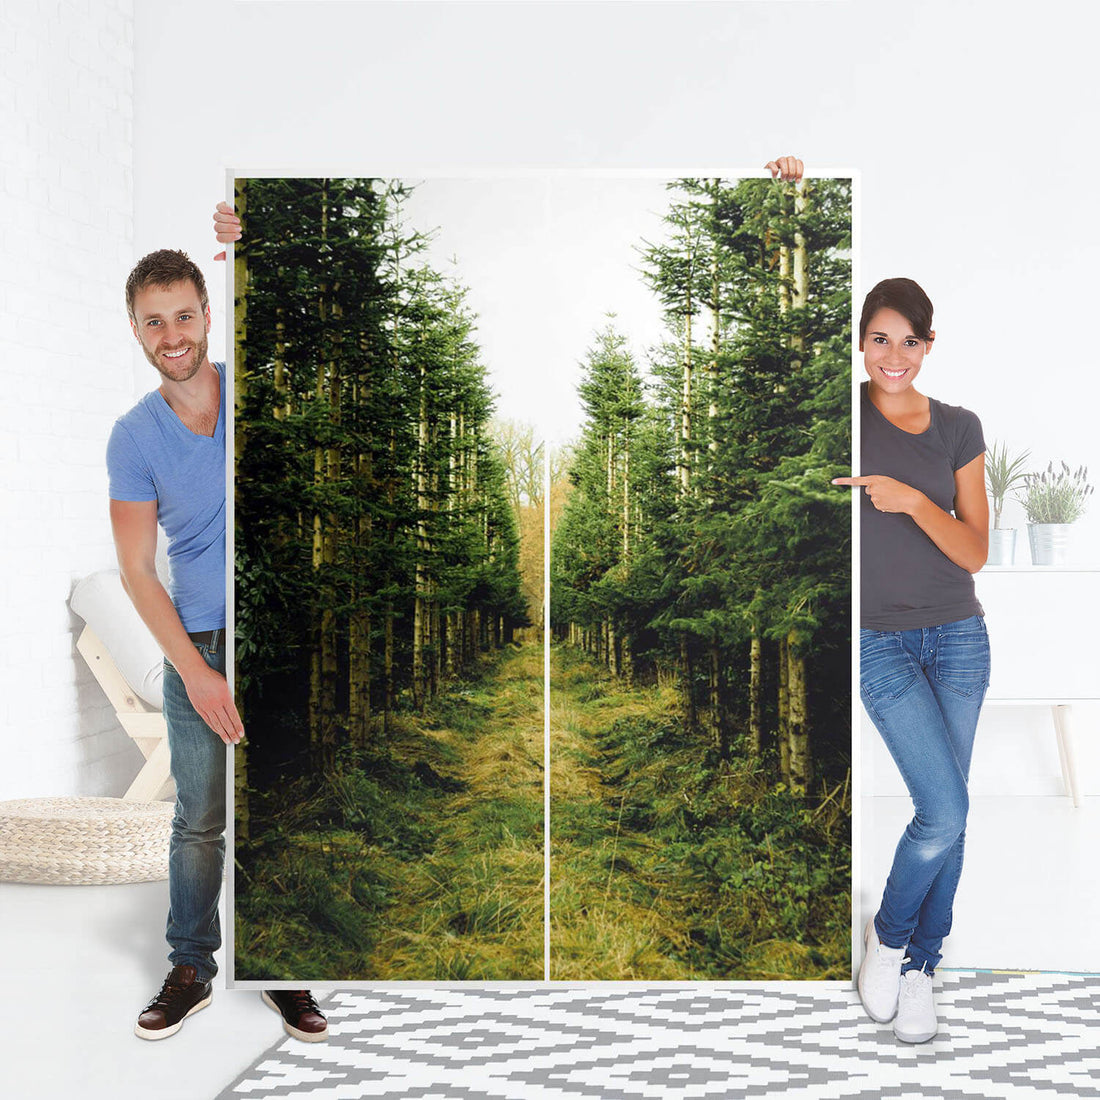 Möbel Klebefolie Green Alley - IKEA Pax Schrank 201 cm Höhe - Schiebetür 75 cm - Folie